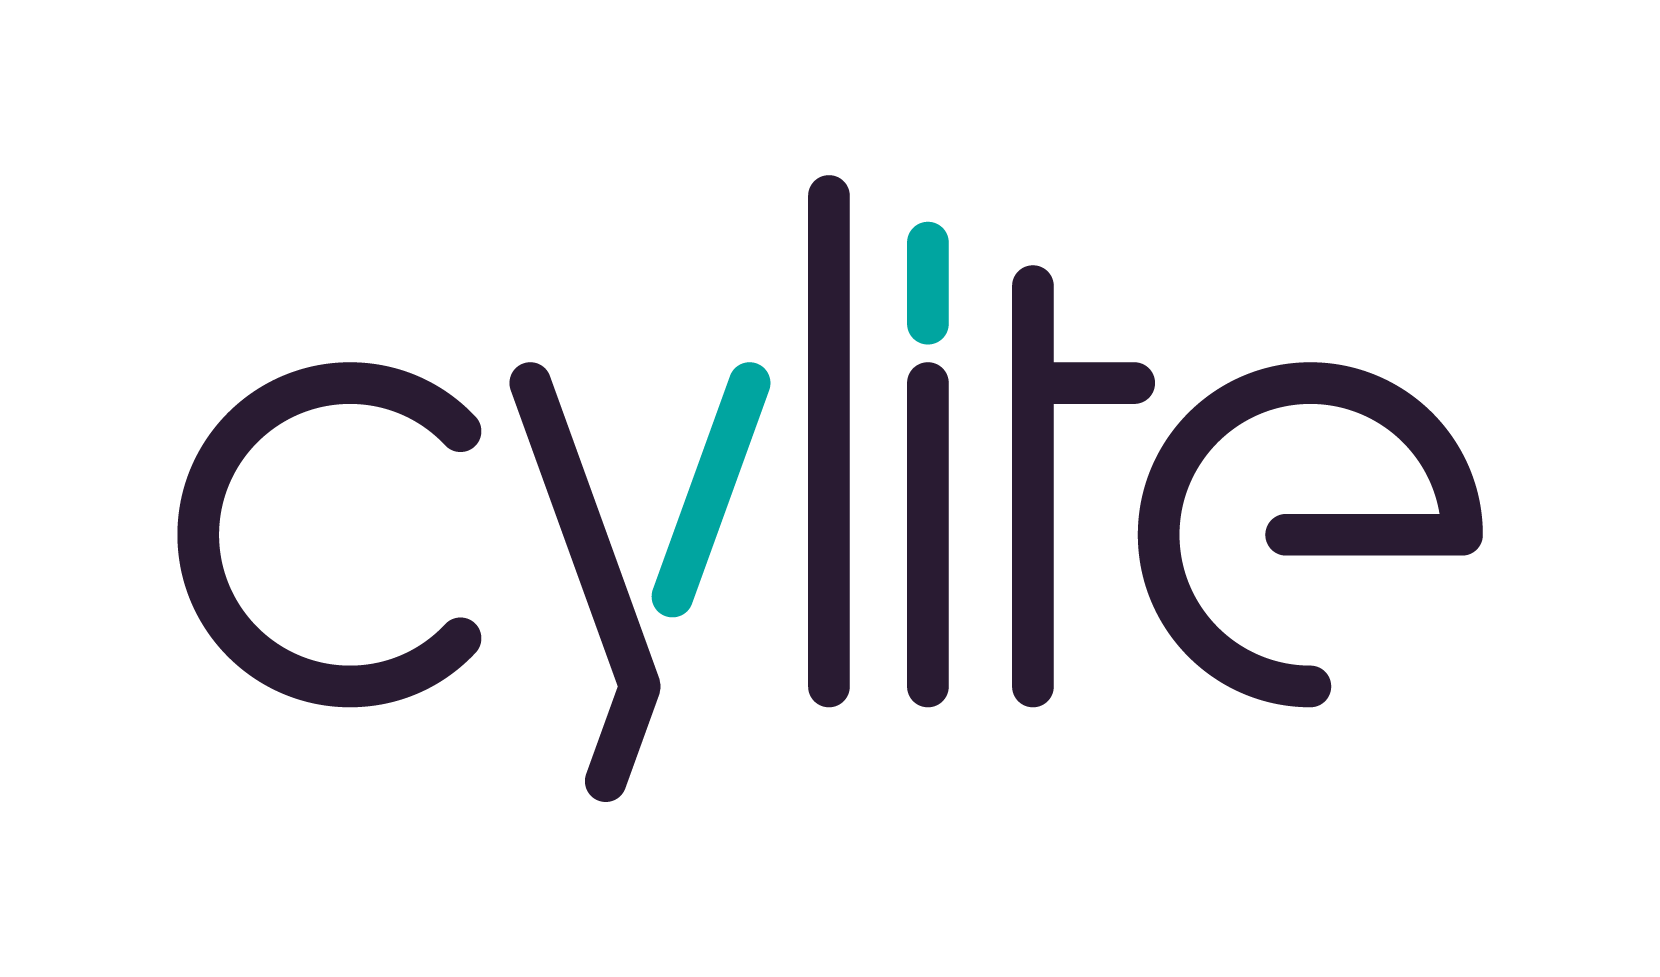 Cylite Pty Ltd